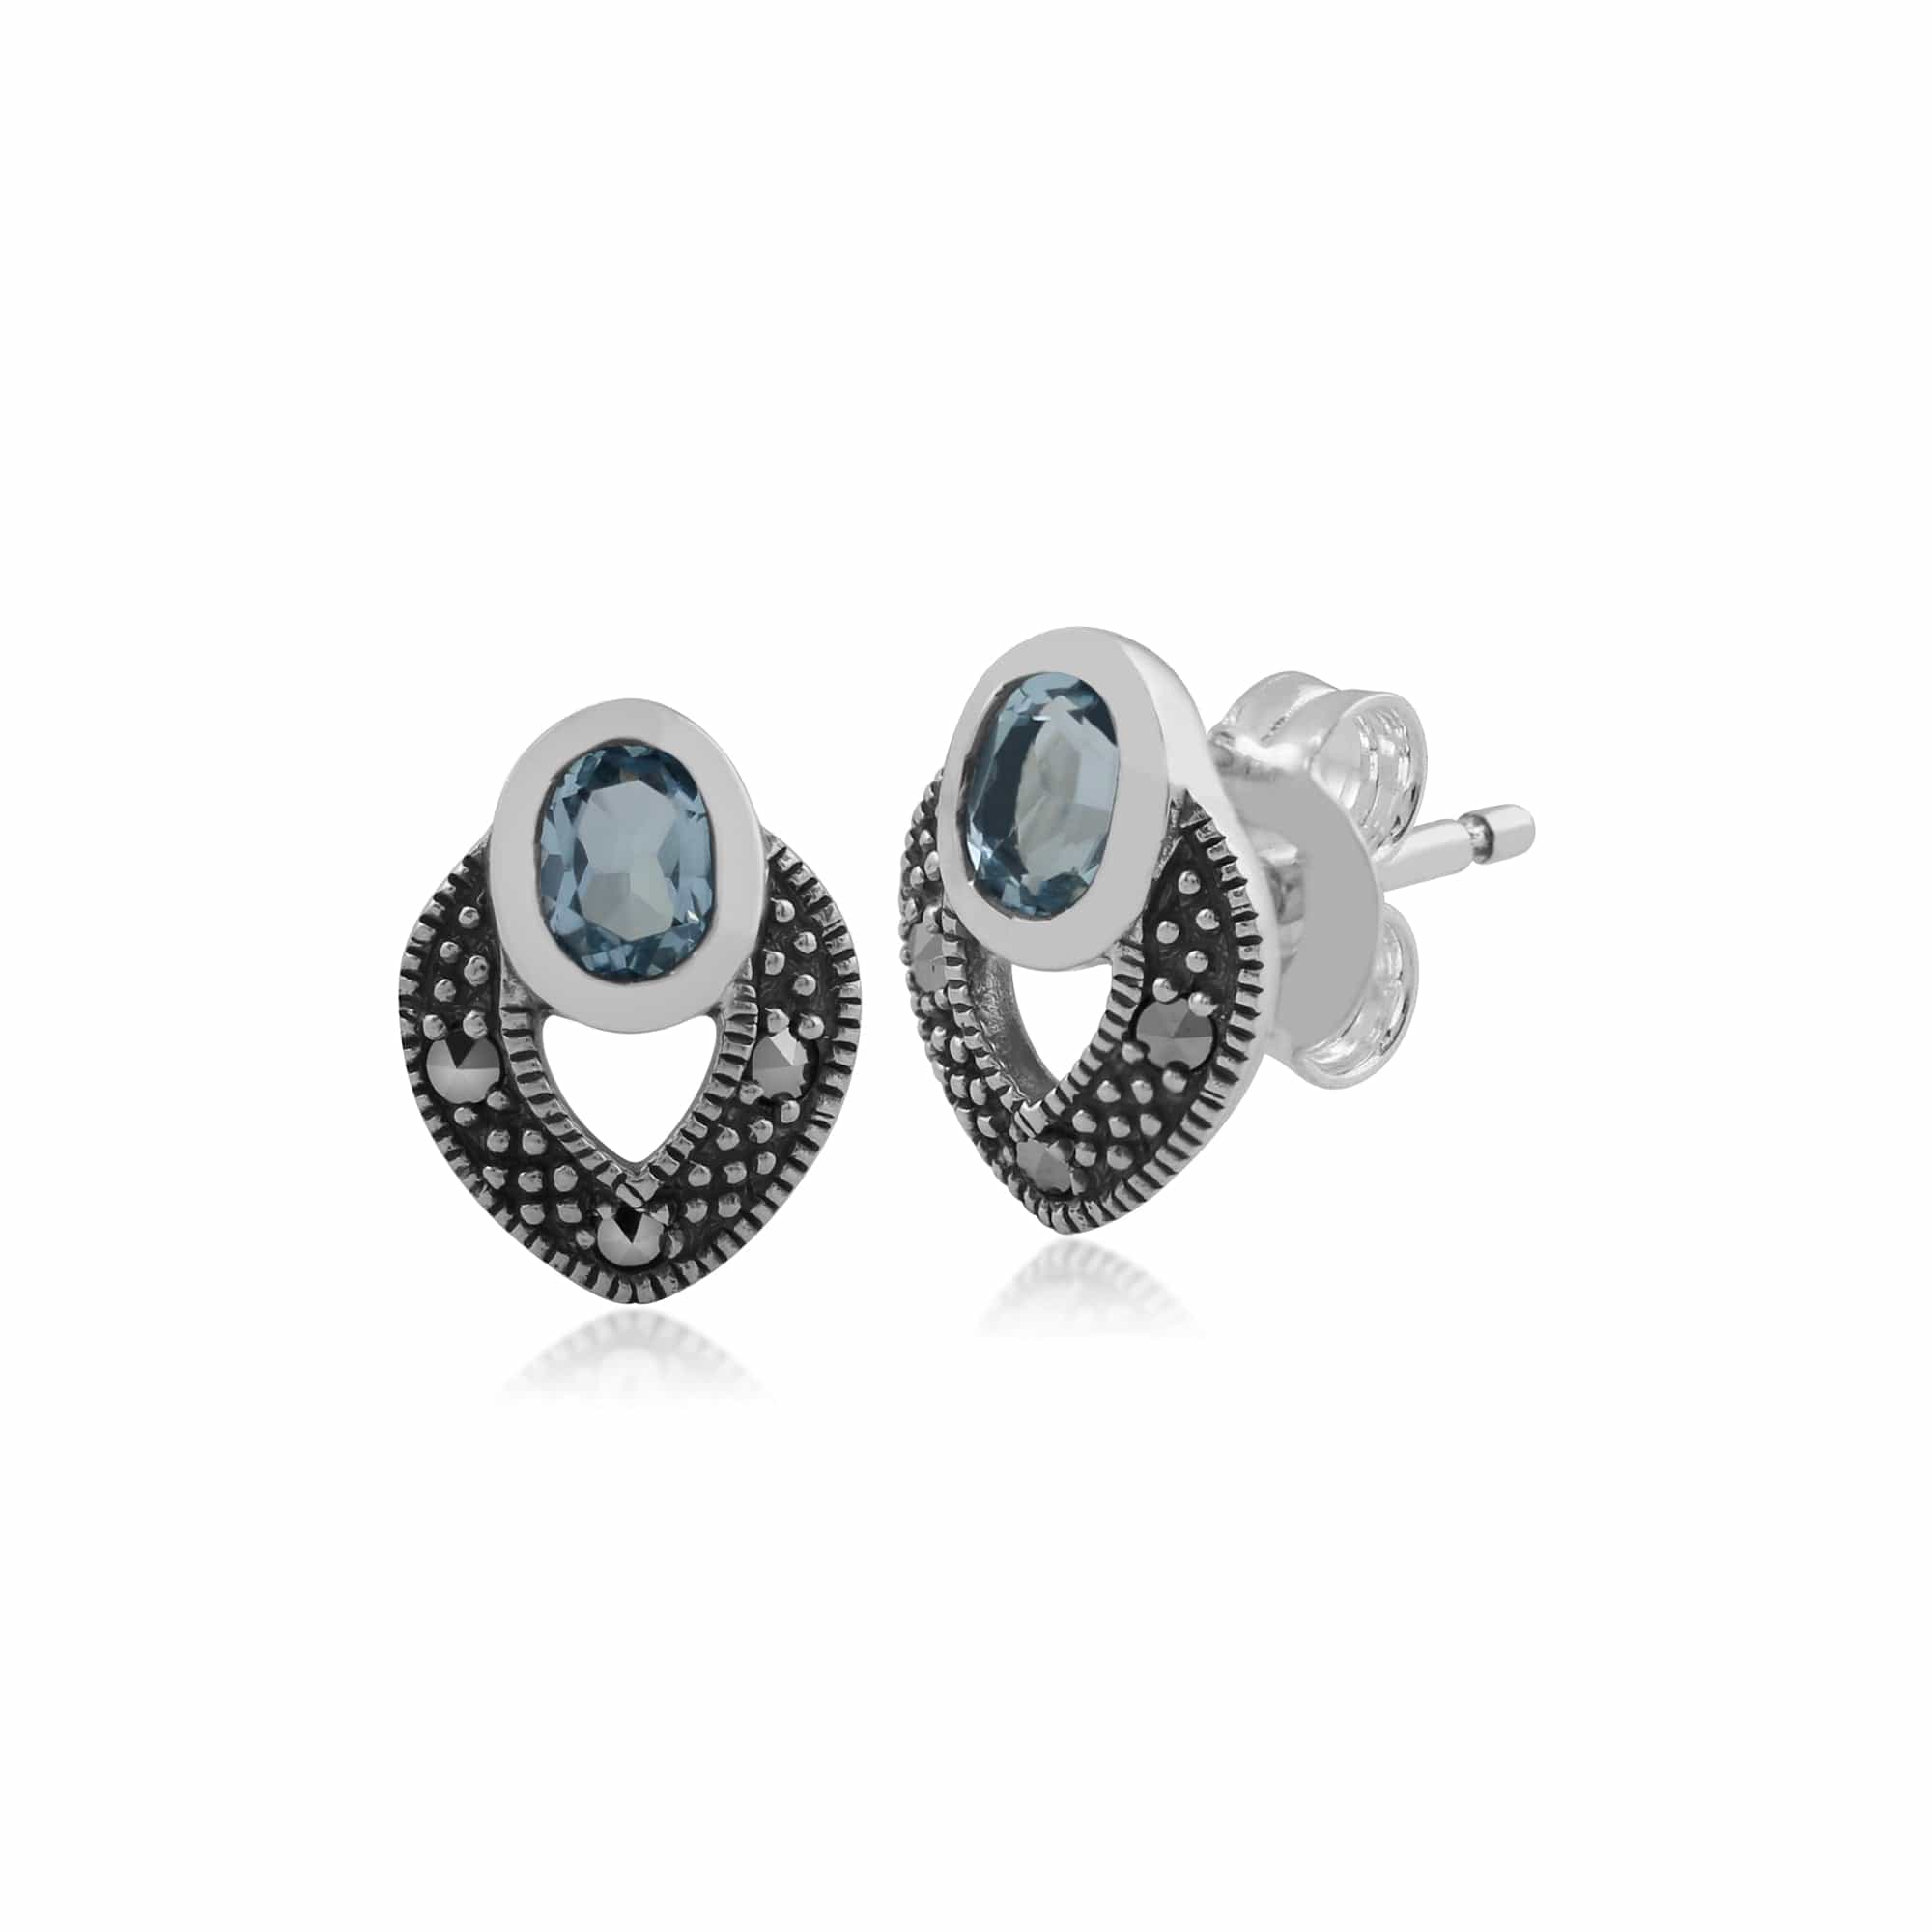 Art Deco Style Oval Blue Topaz & Marcasite Stud Earrings in 925 Sterling Silver